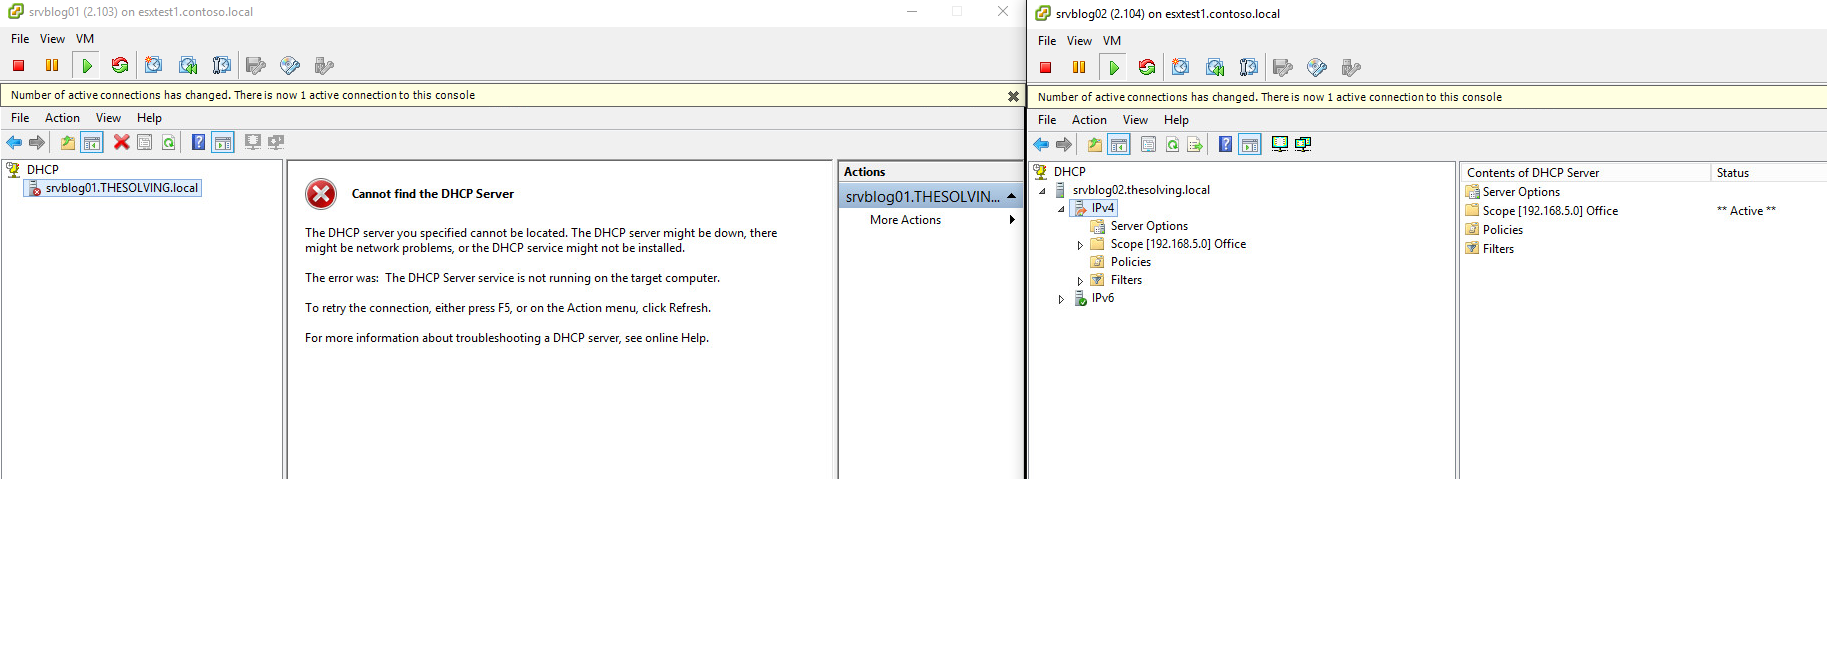 Windows Server2012R2でDhcpフェールオーバーを構成する方法